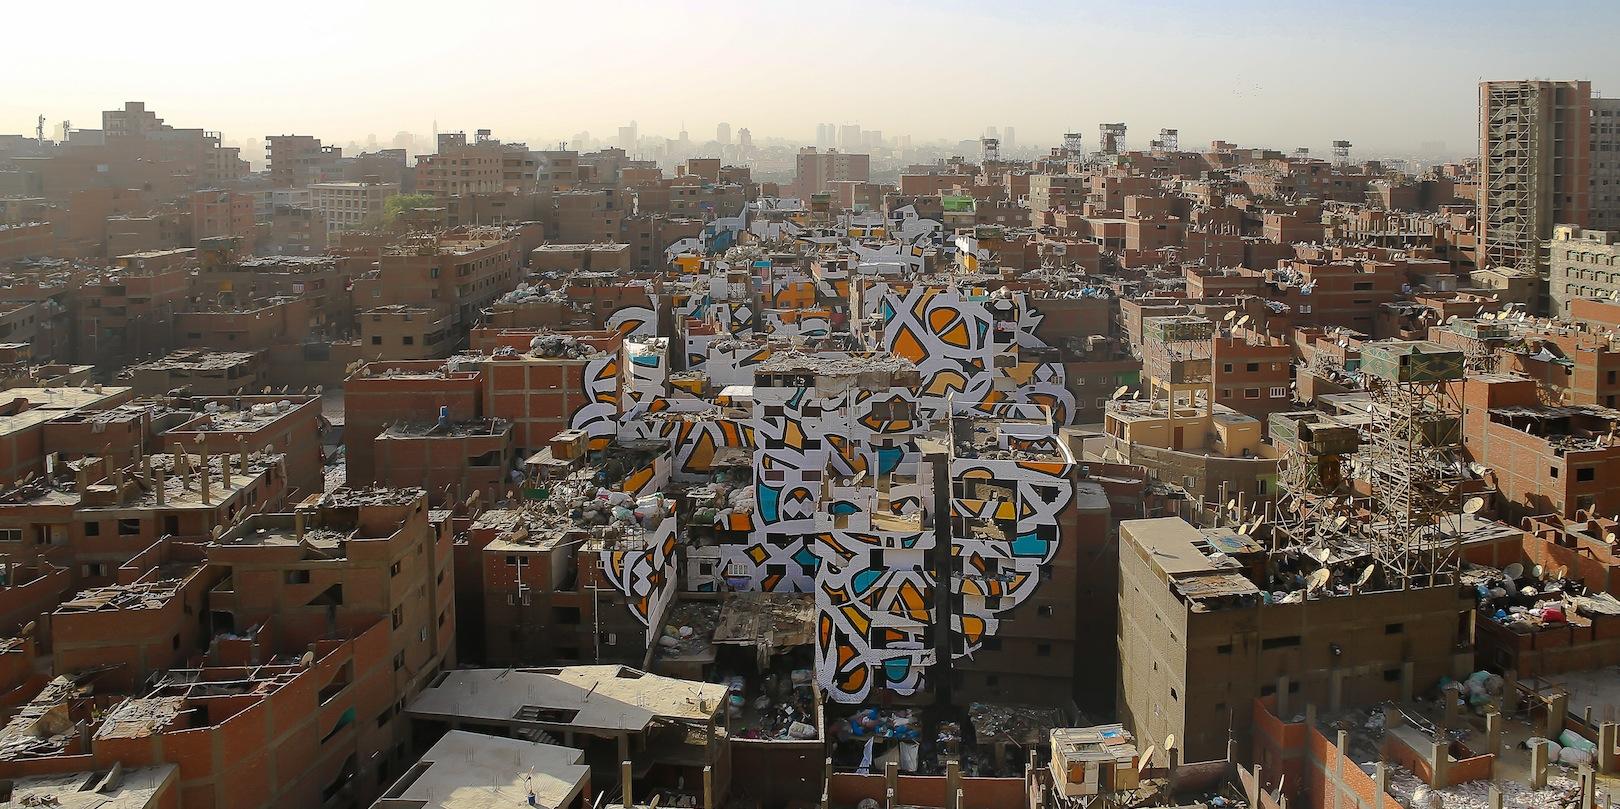 فنان يستخدم 50 جداراً ليحول حياً عشوائياً في القاهرة إلى لوحة جرافيتي عملاقة النتيجة مذهلة 